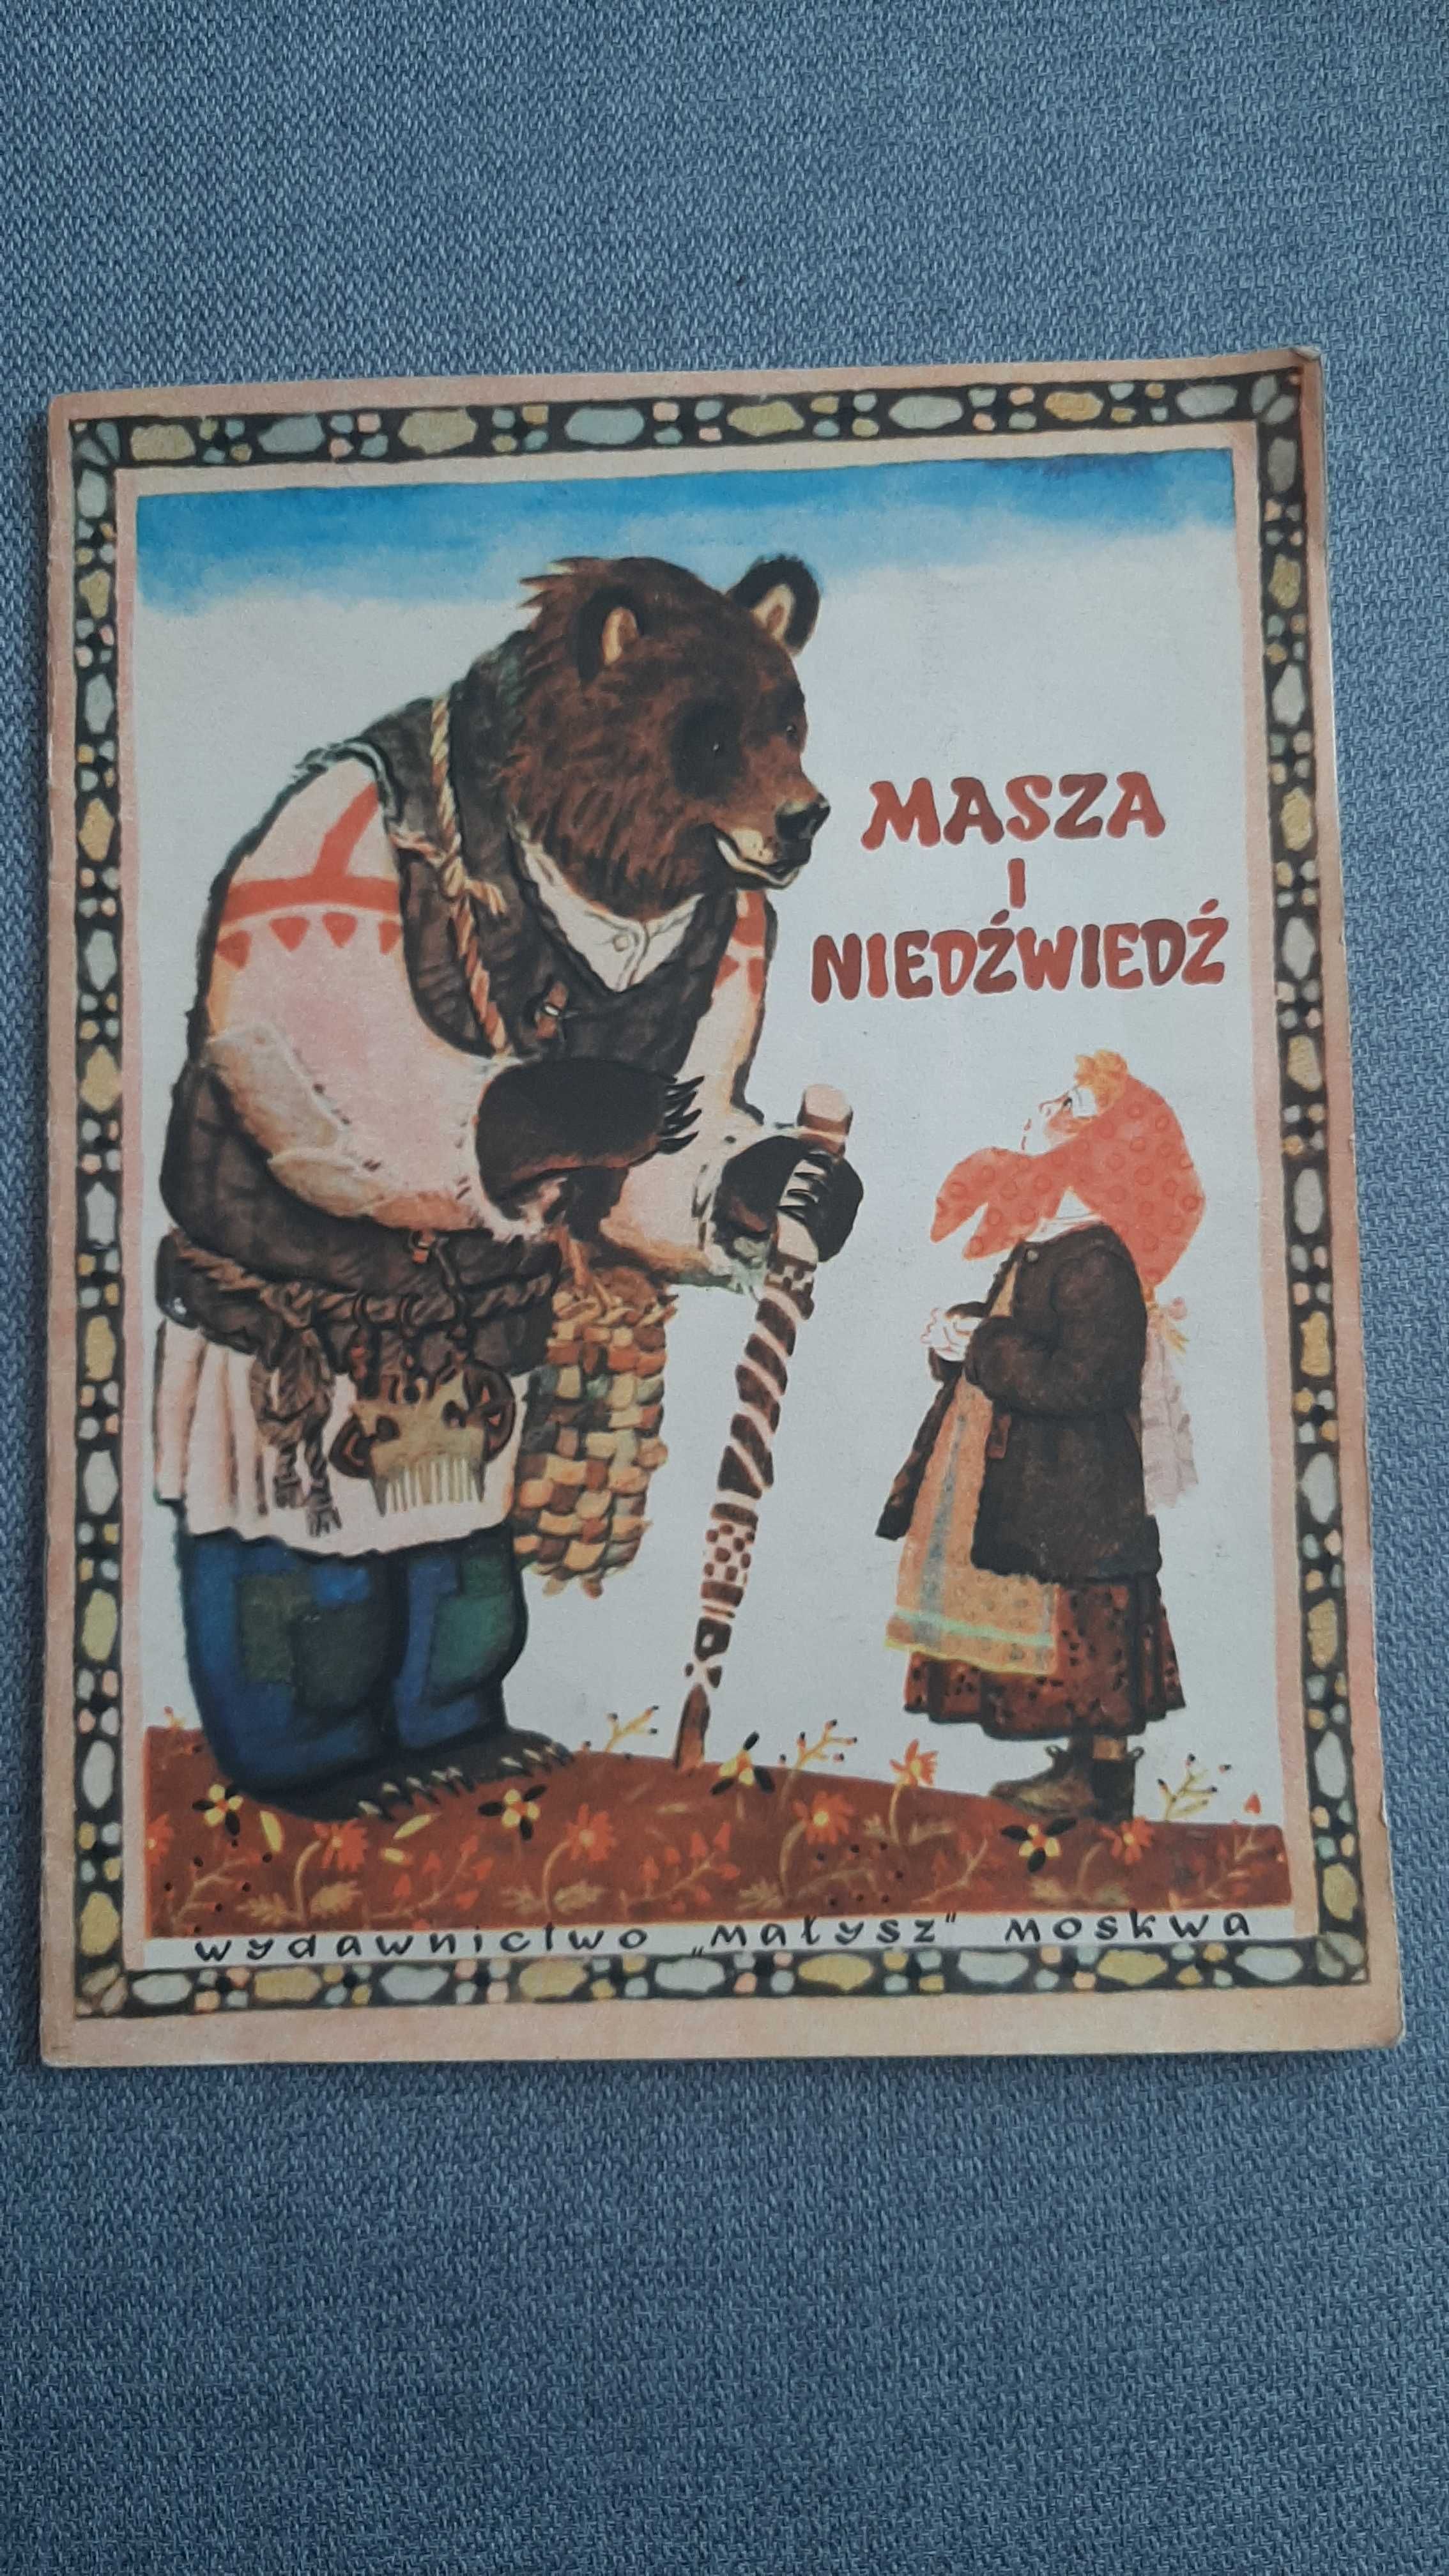 Masza i niedźwiedź Wydawnictwo Małysz Moskwa W. Łosin Baśnie rosyjskie